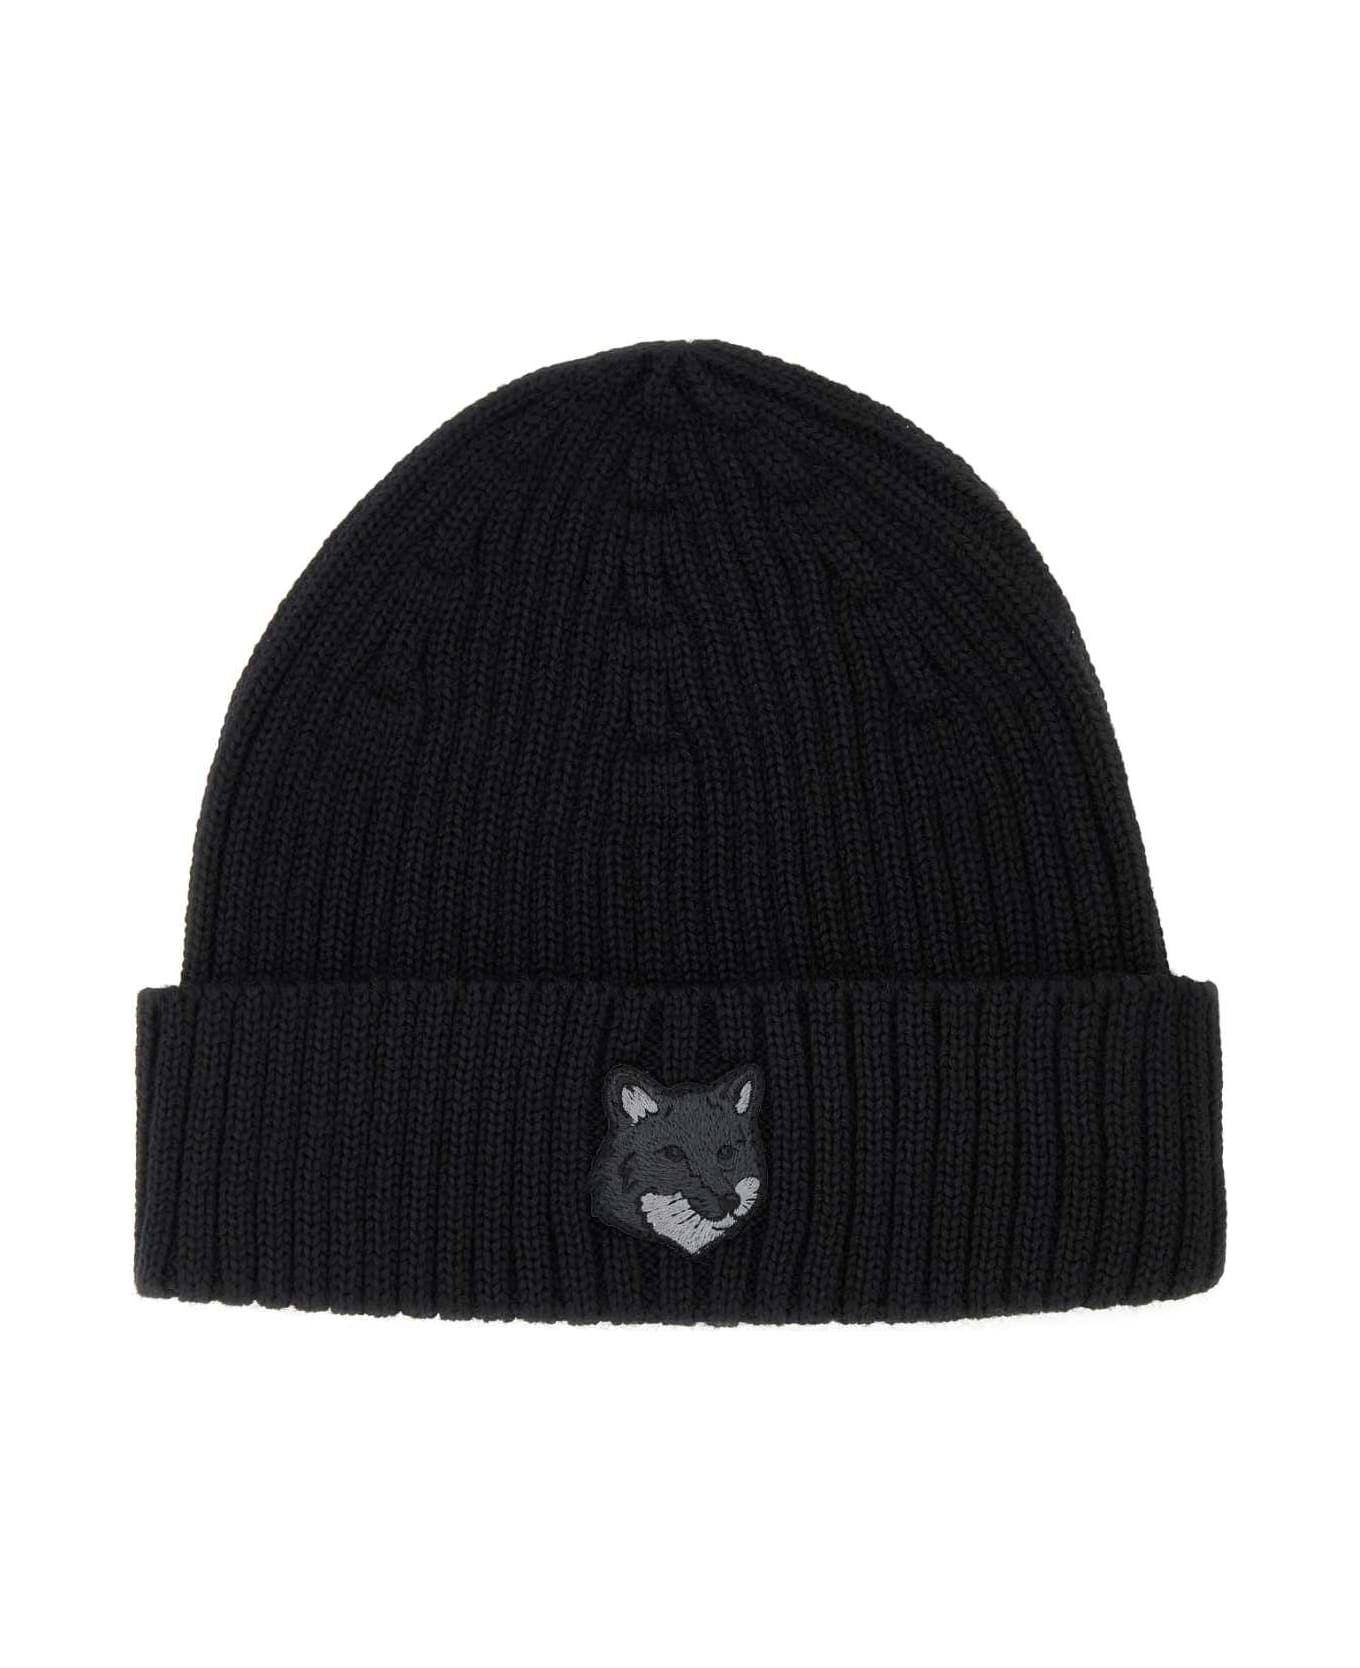 Maison Kitsuné Black Wool Beanie Hat - BLACK デジタルアクセサリー